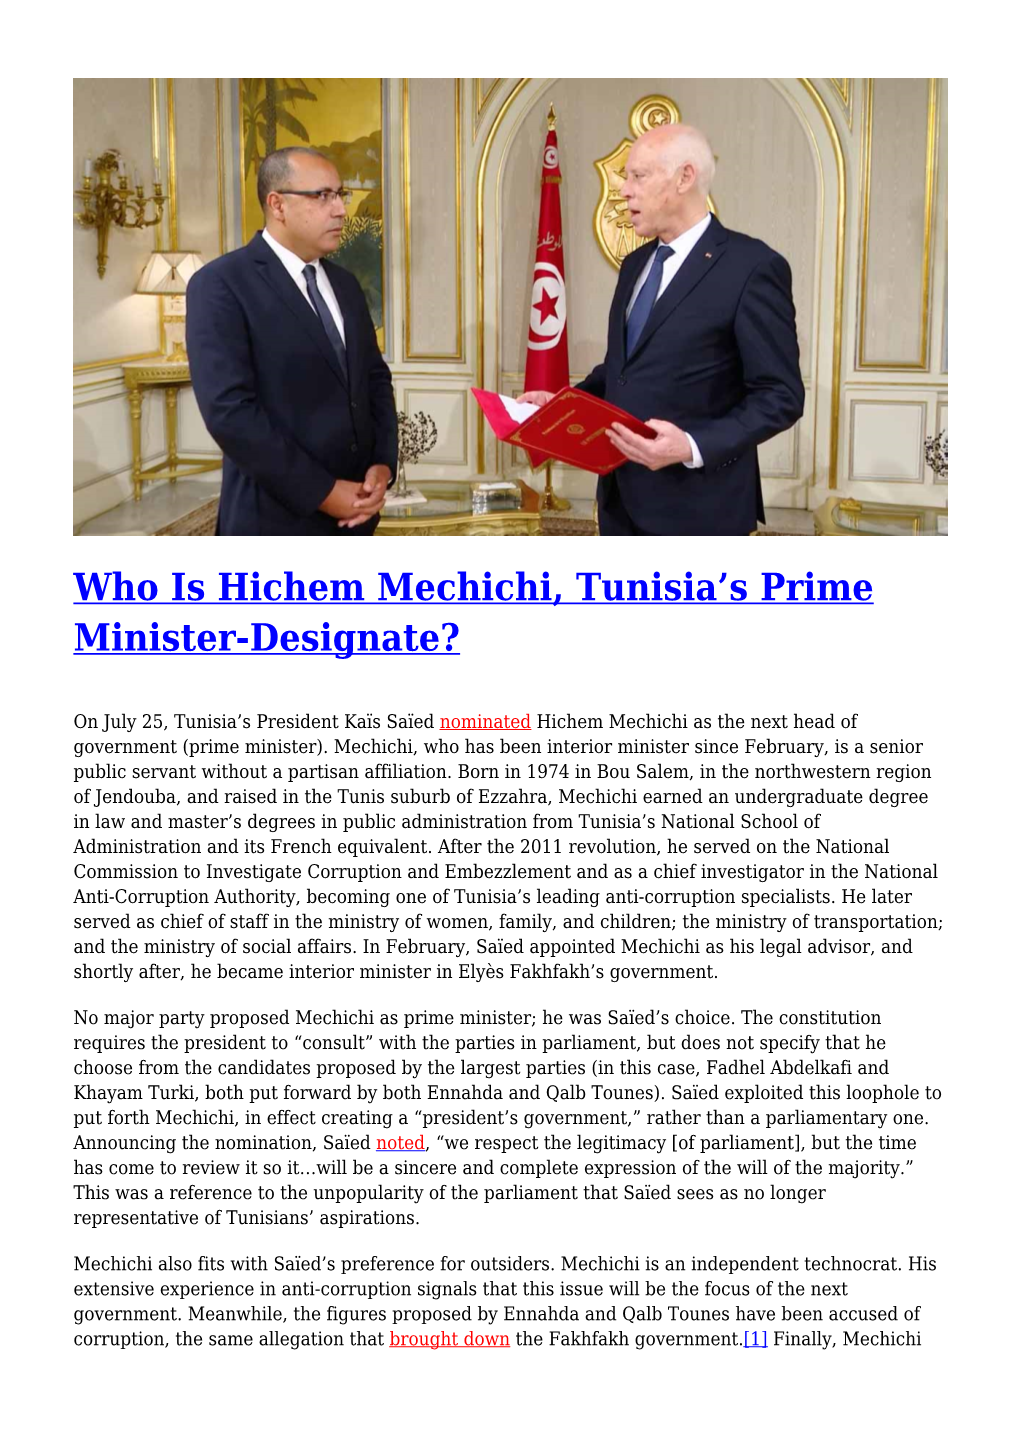 Who Is Hichem Mechichi, Tunisia's Prime Minister-Designate?